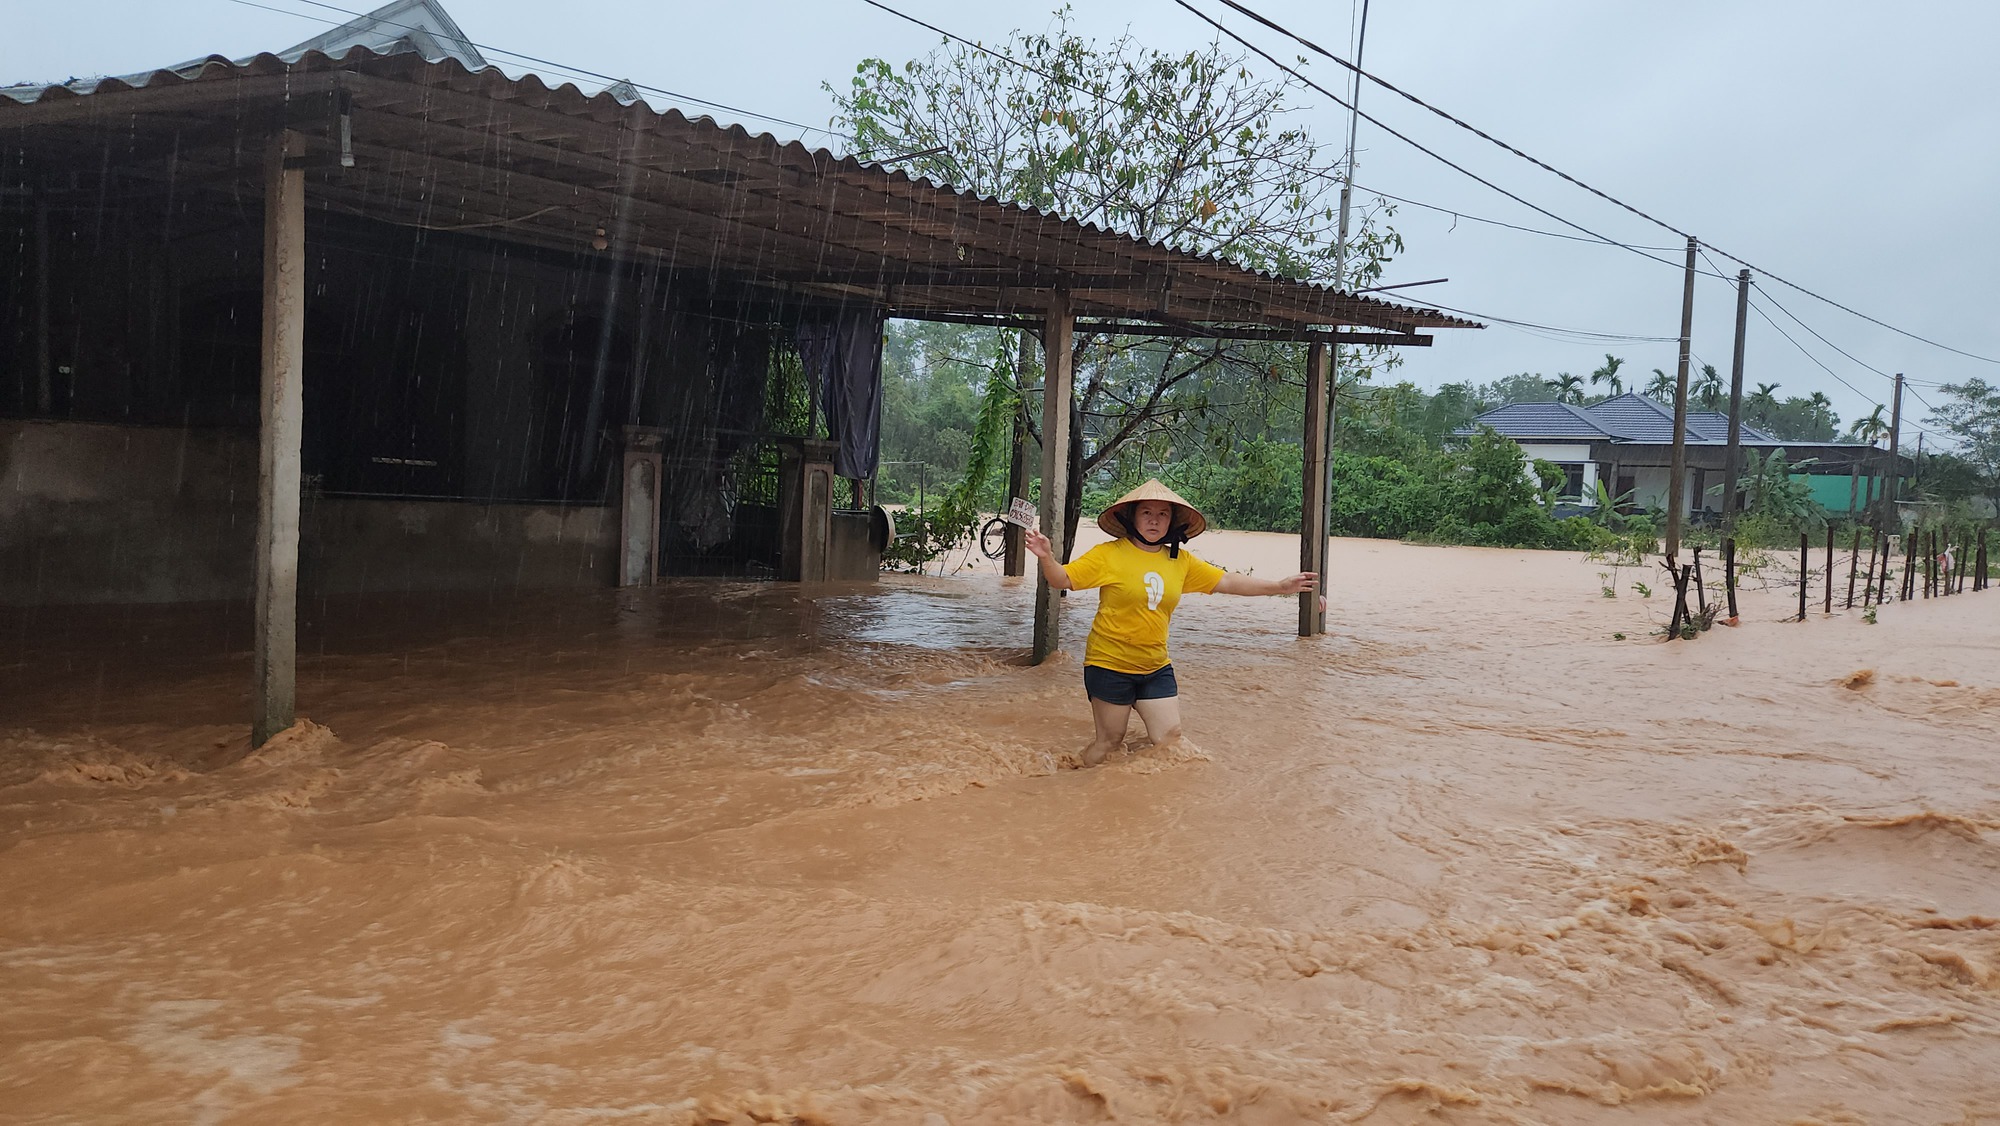 Hà Tĩnh: Quốc lộ 15 A biến 'thành sông' do mưa lớn, nhiều nhà dân ngập sâu - Ảnh 9.